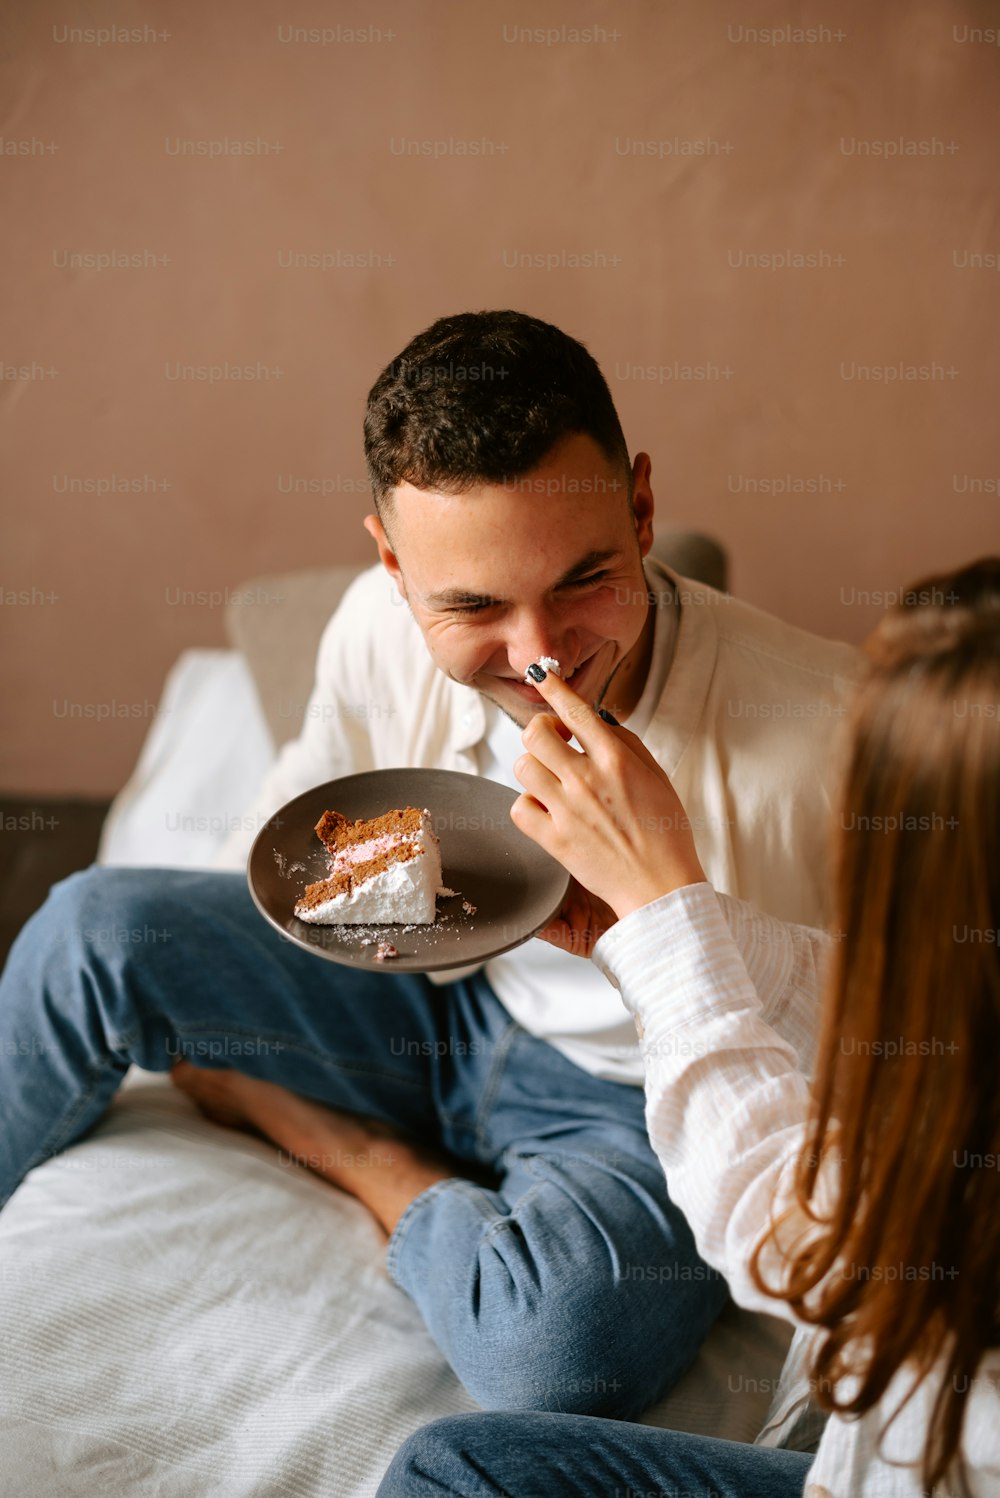 Un hombre y una mujer sentados en una cama comiendo pastel